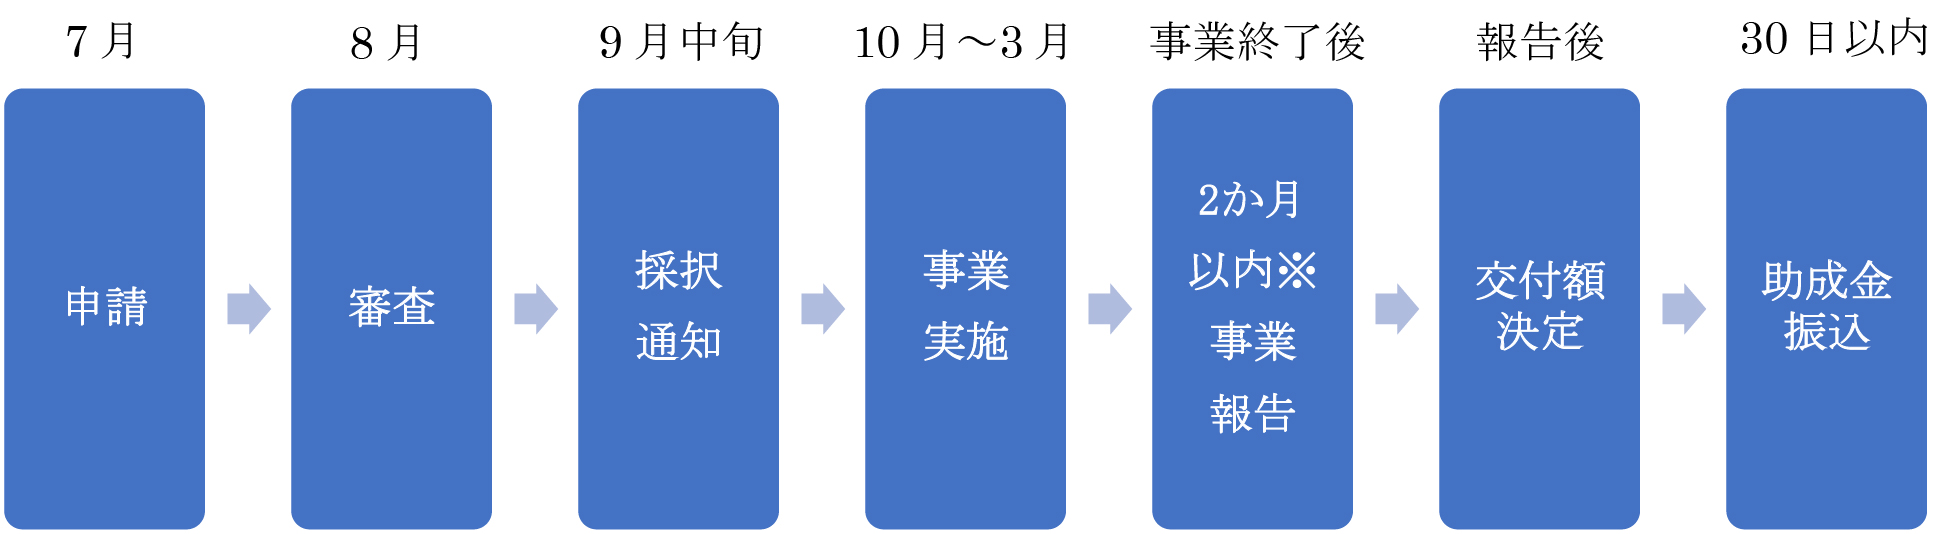 kankyo-schedule.jpg